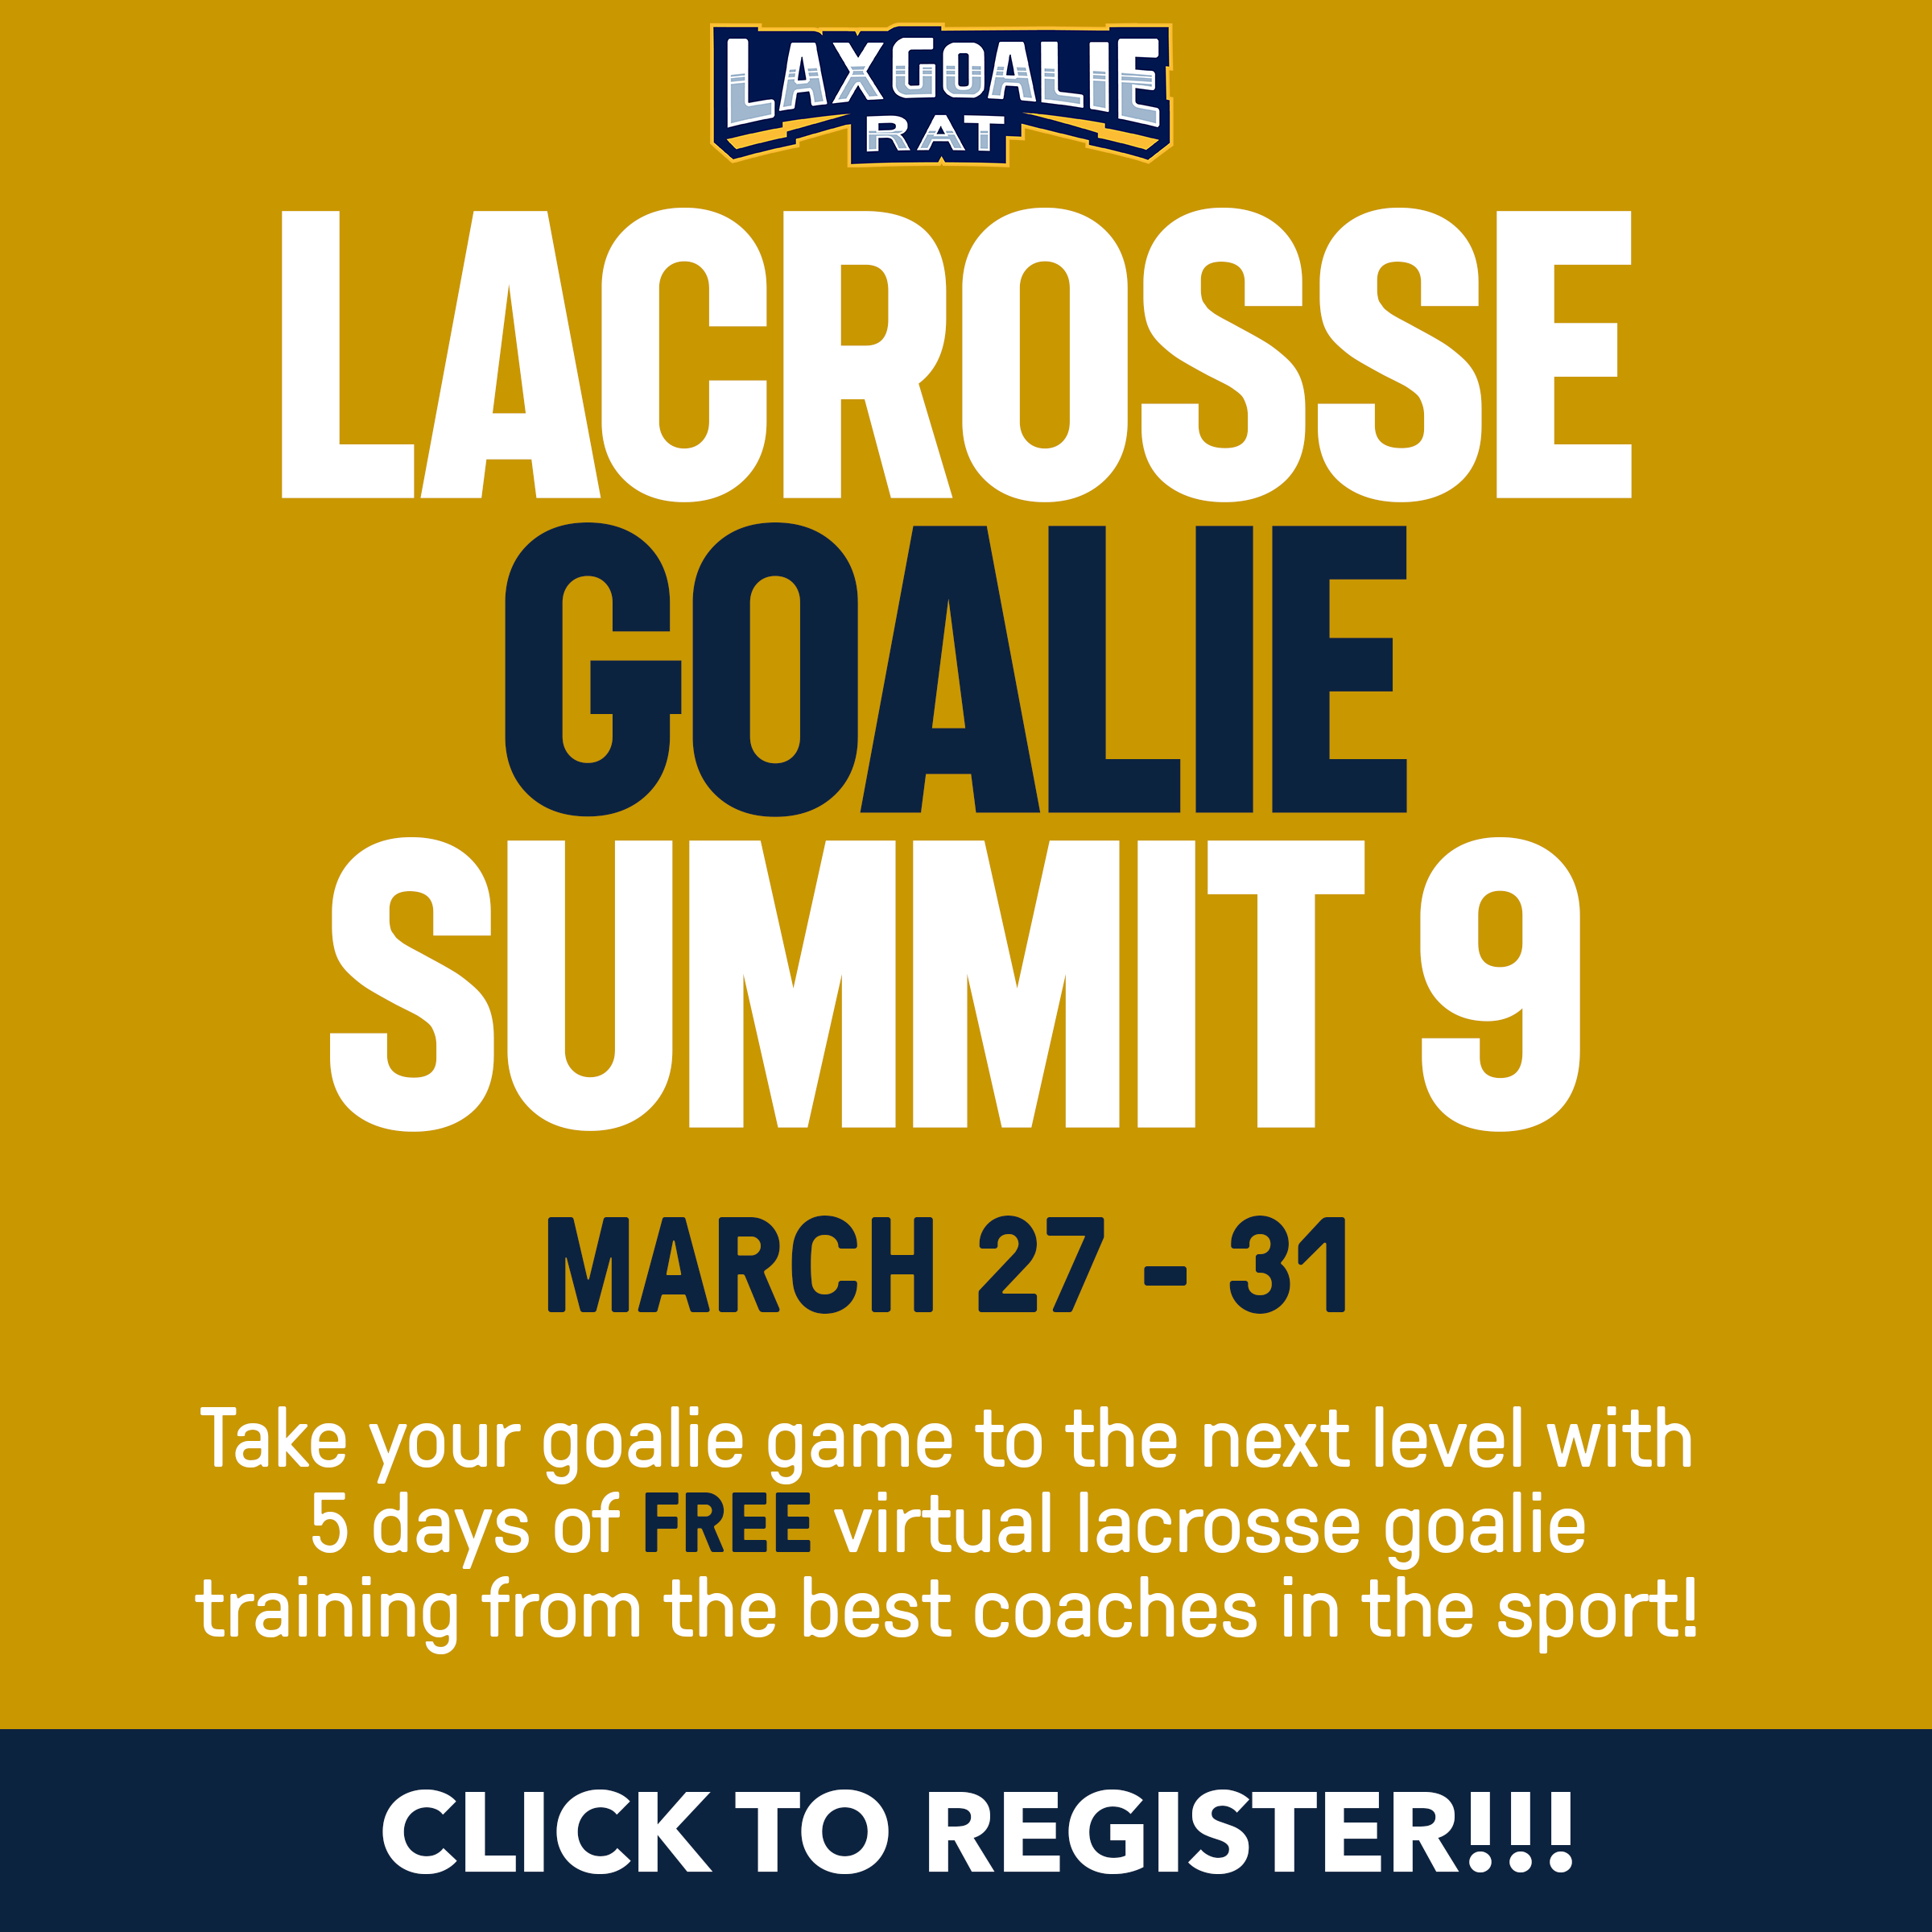 Lacrosse Goalie Summit